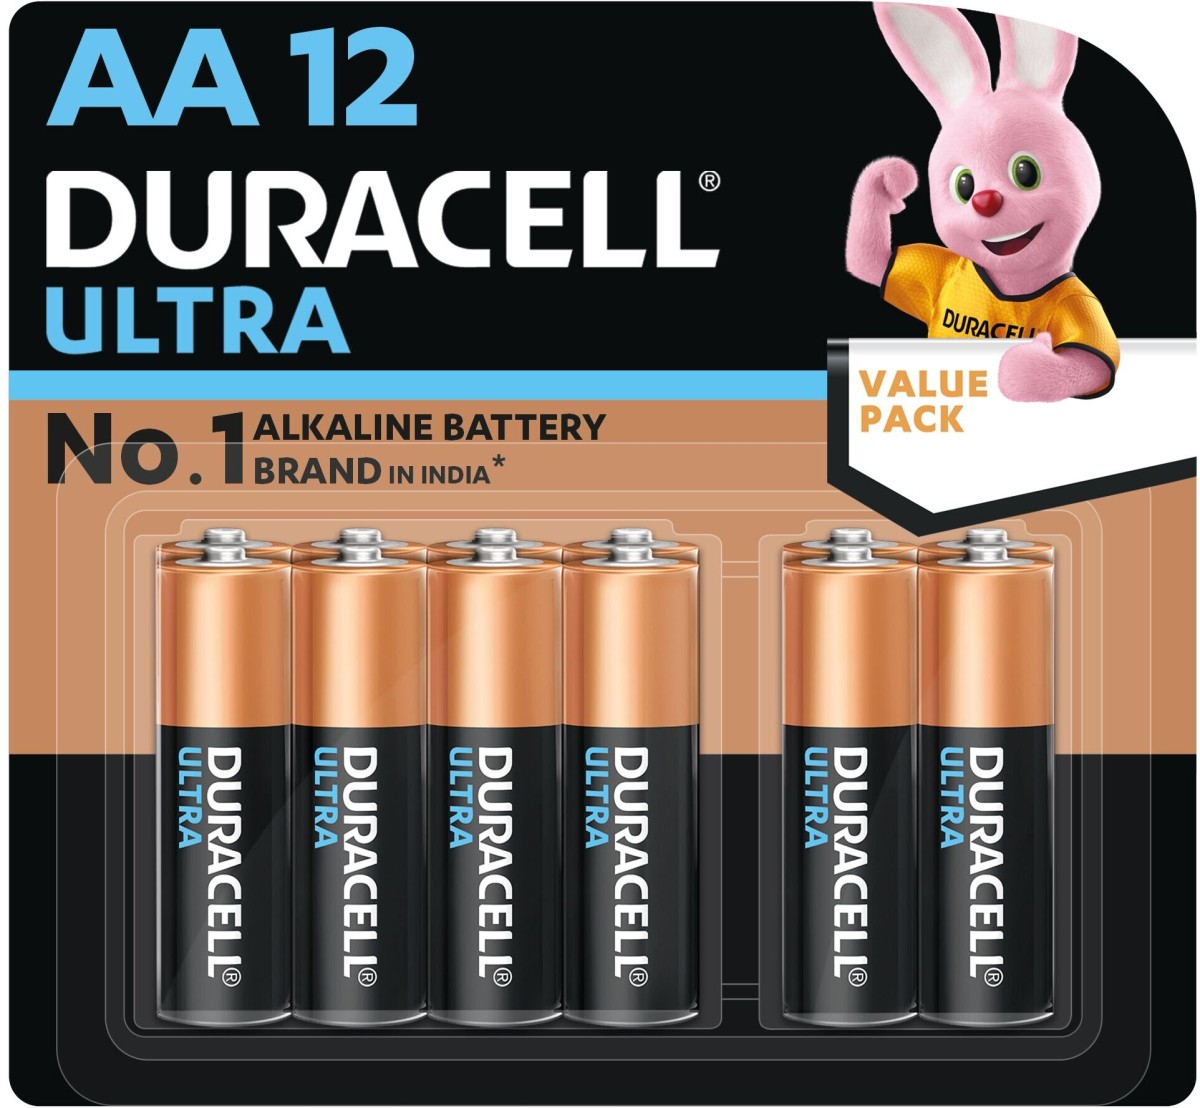 Flysmart GP 27A Battery 5 Pieces Pack. 12V Alkaline Battery